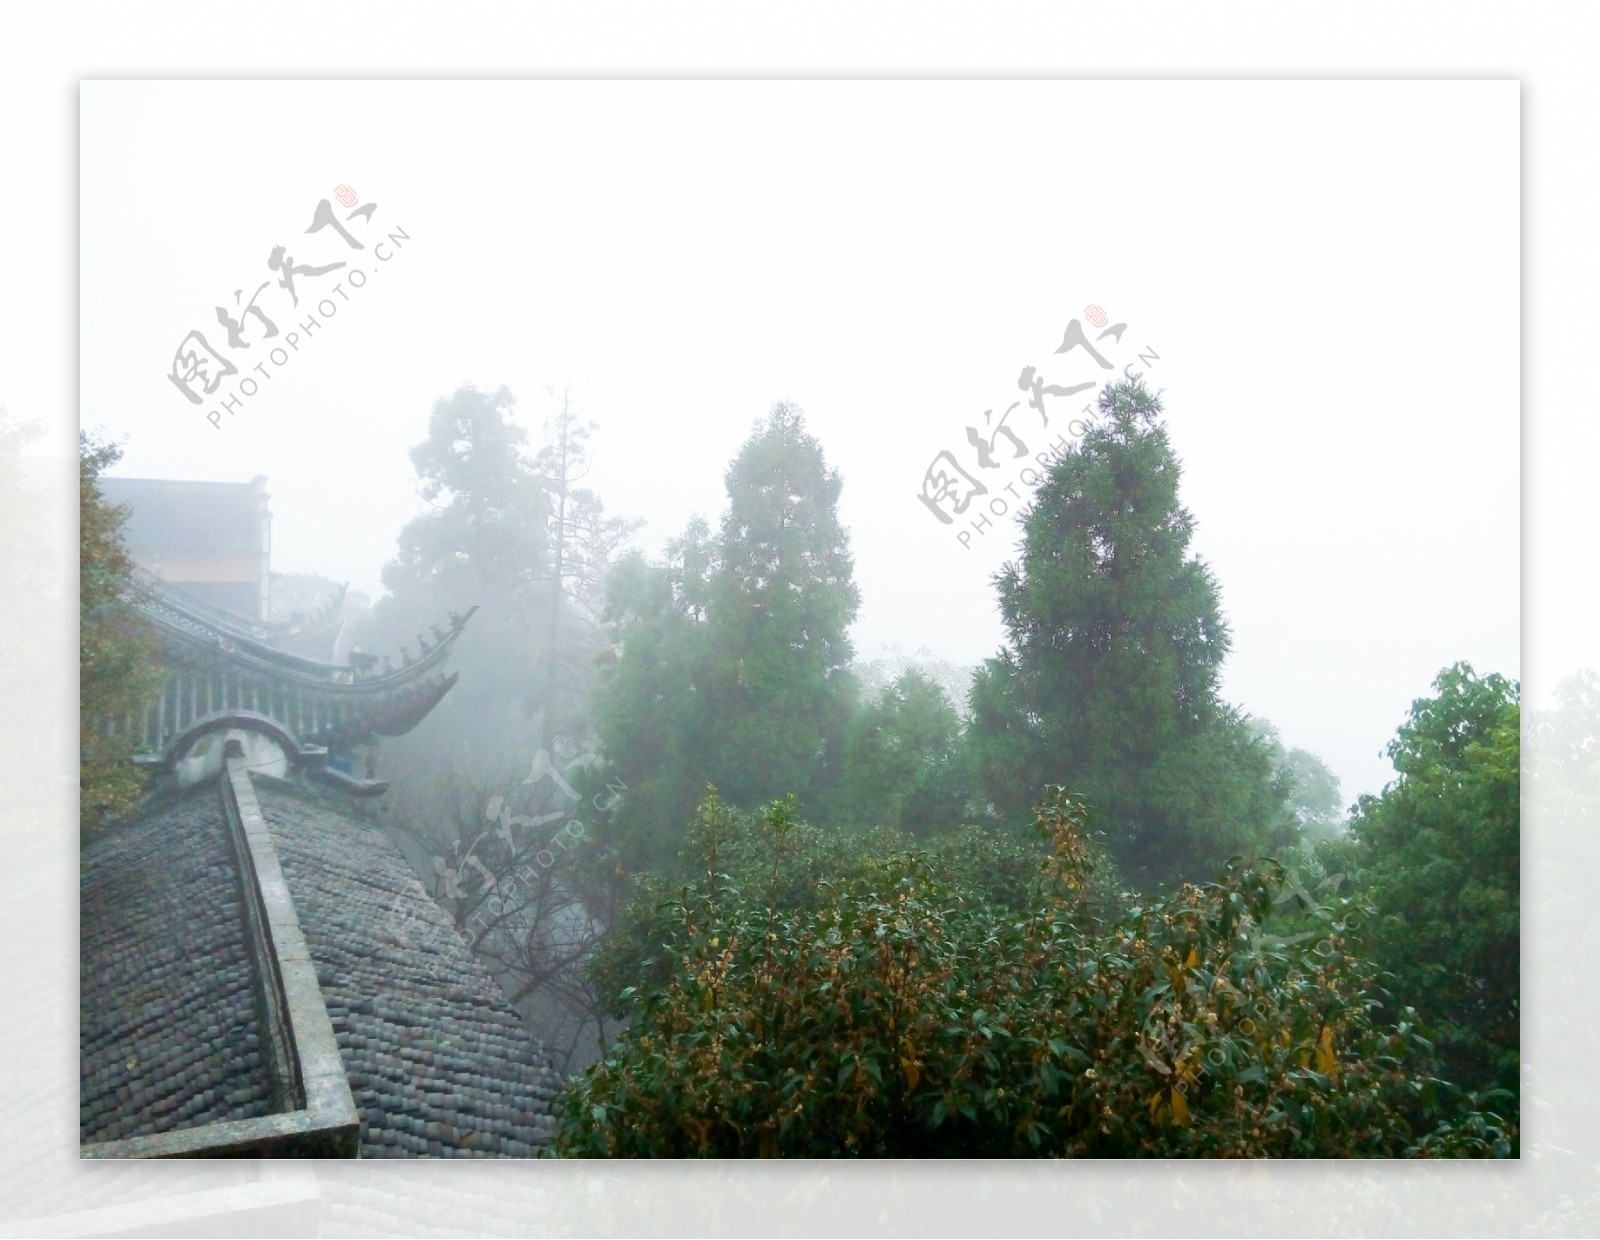 玉皇山顶的雾气